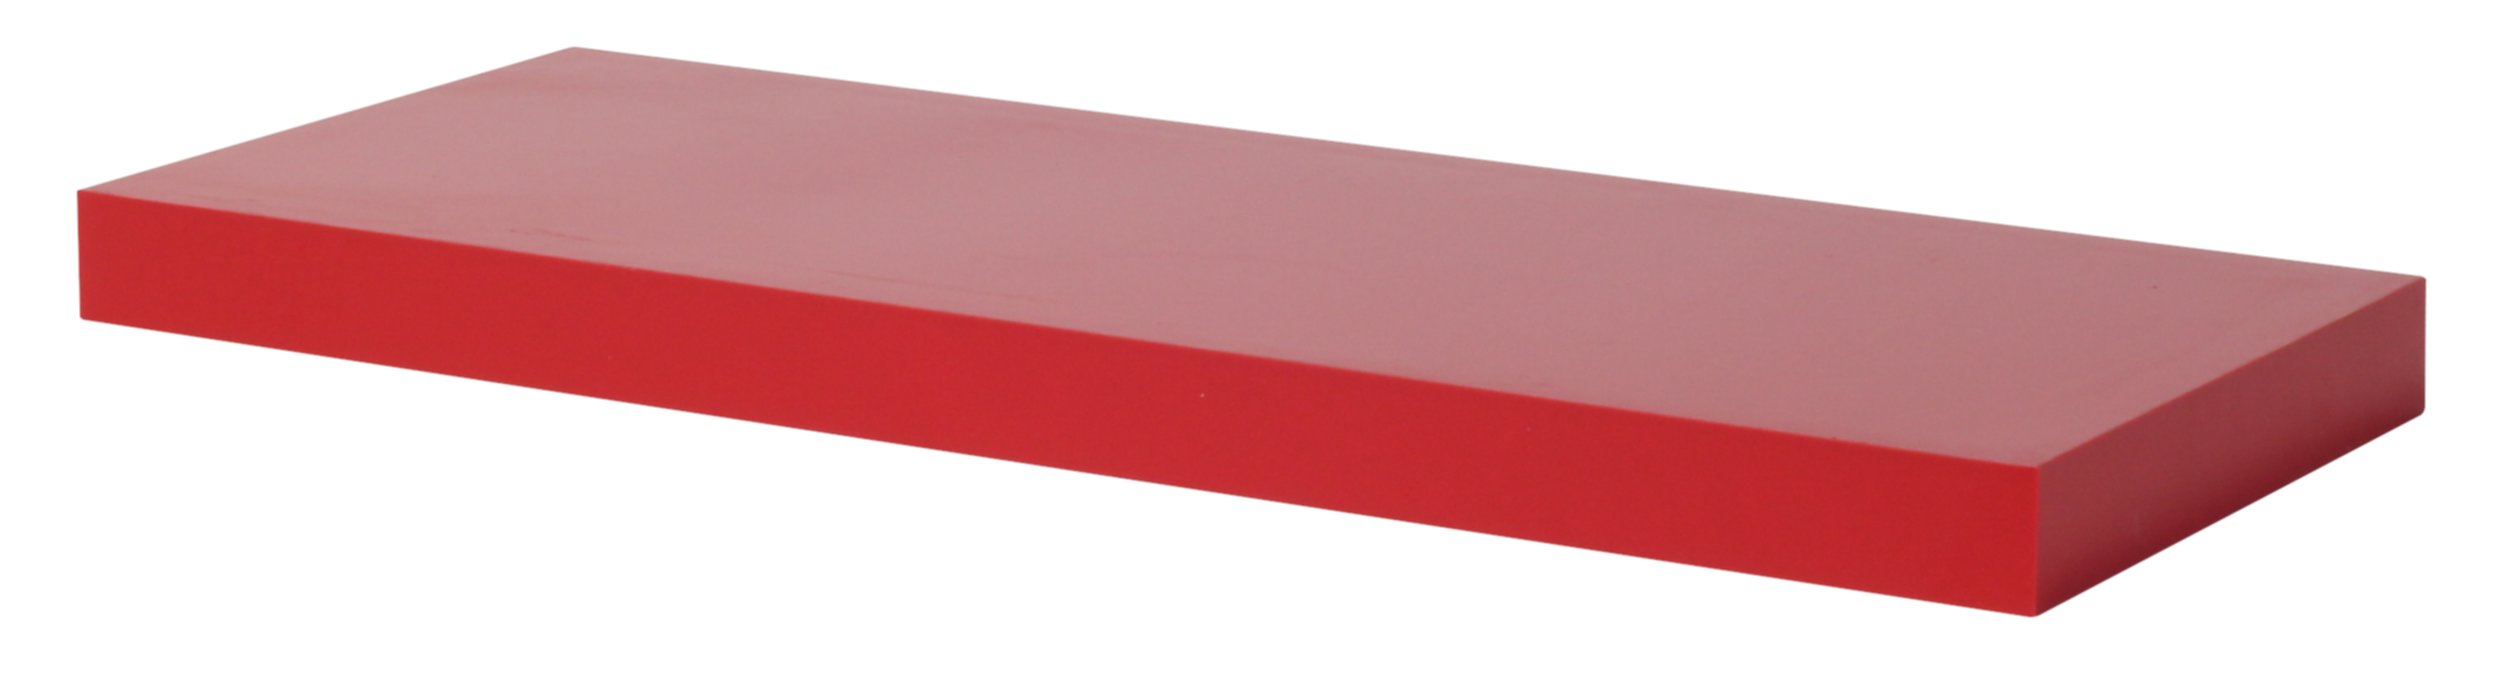 Tablette DS4 Rouge 60x23,5x3,8cm